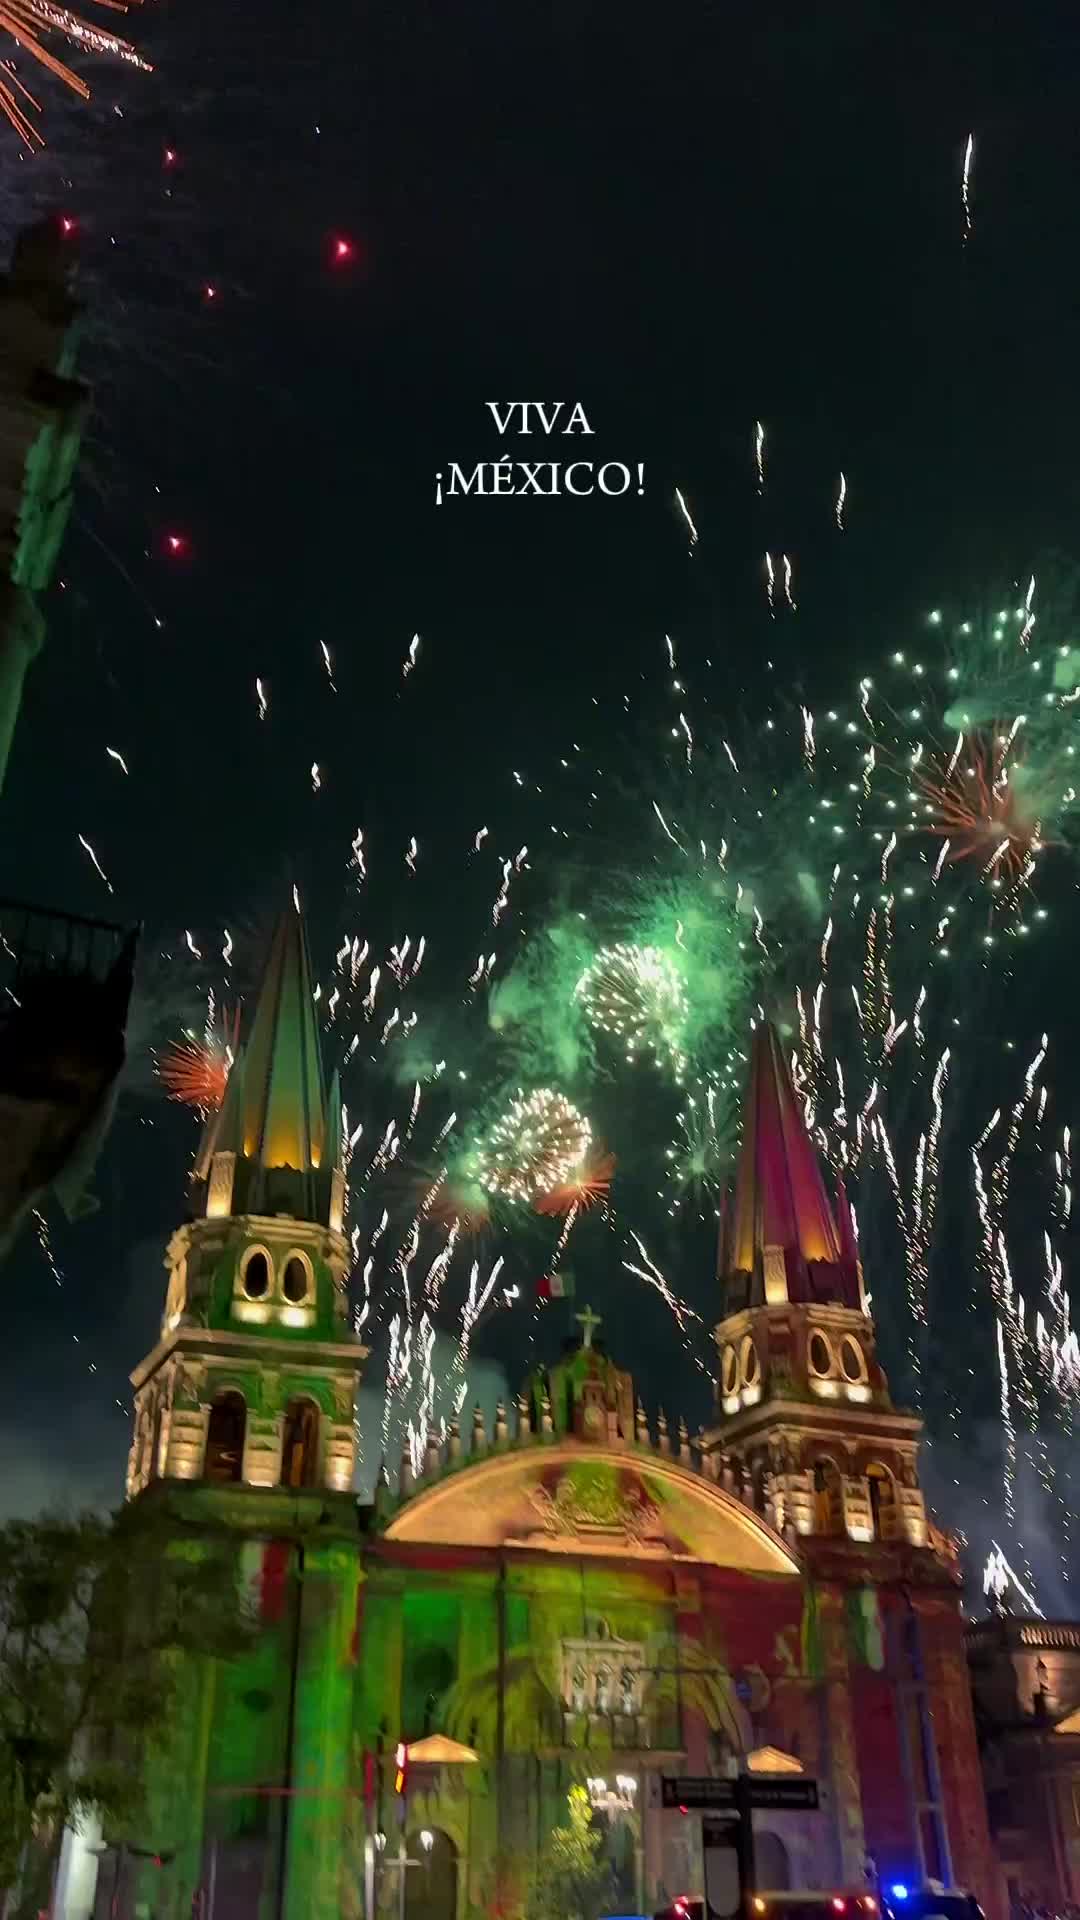 🇲🇽✨ ¡Así se siente México! 💚🤍❤️

#vivamexico #mexico #guadalajara #gdlmx #mespatrio #septiembre #banderademexico #mexicomagico #vivemexico #jalisco #jaliscomexico #jaliscoesmexico #guadalajarajalisco #zapopan #tlaquepaque #jaliscomx #mexicolindo #vivamexico